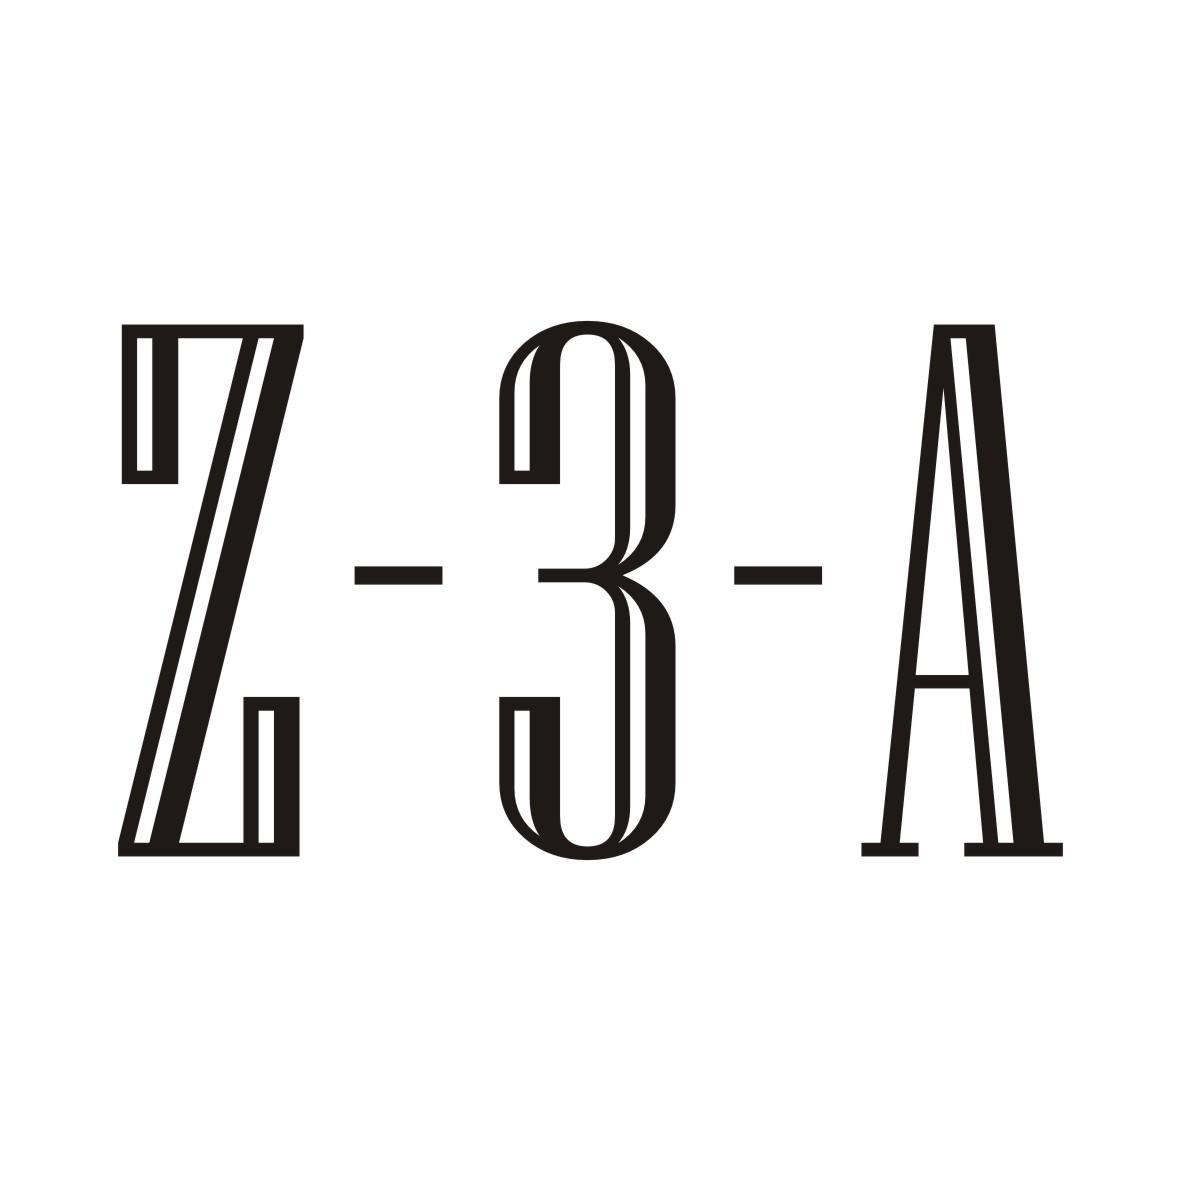 Z-3-A